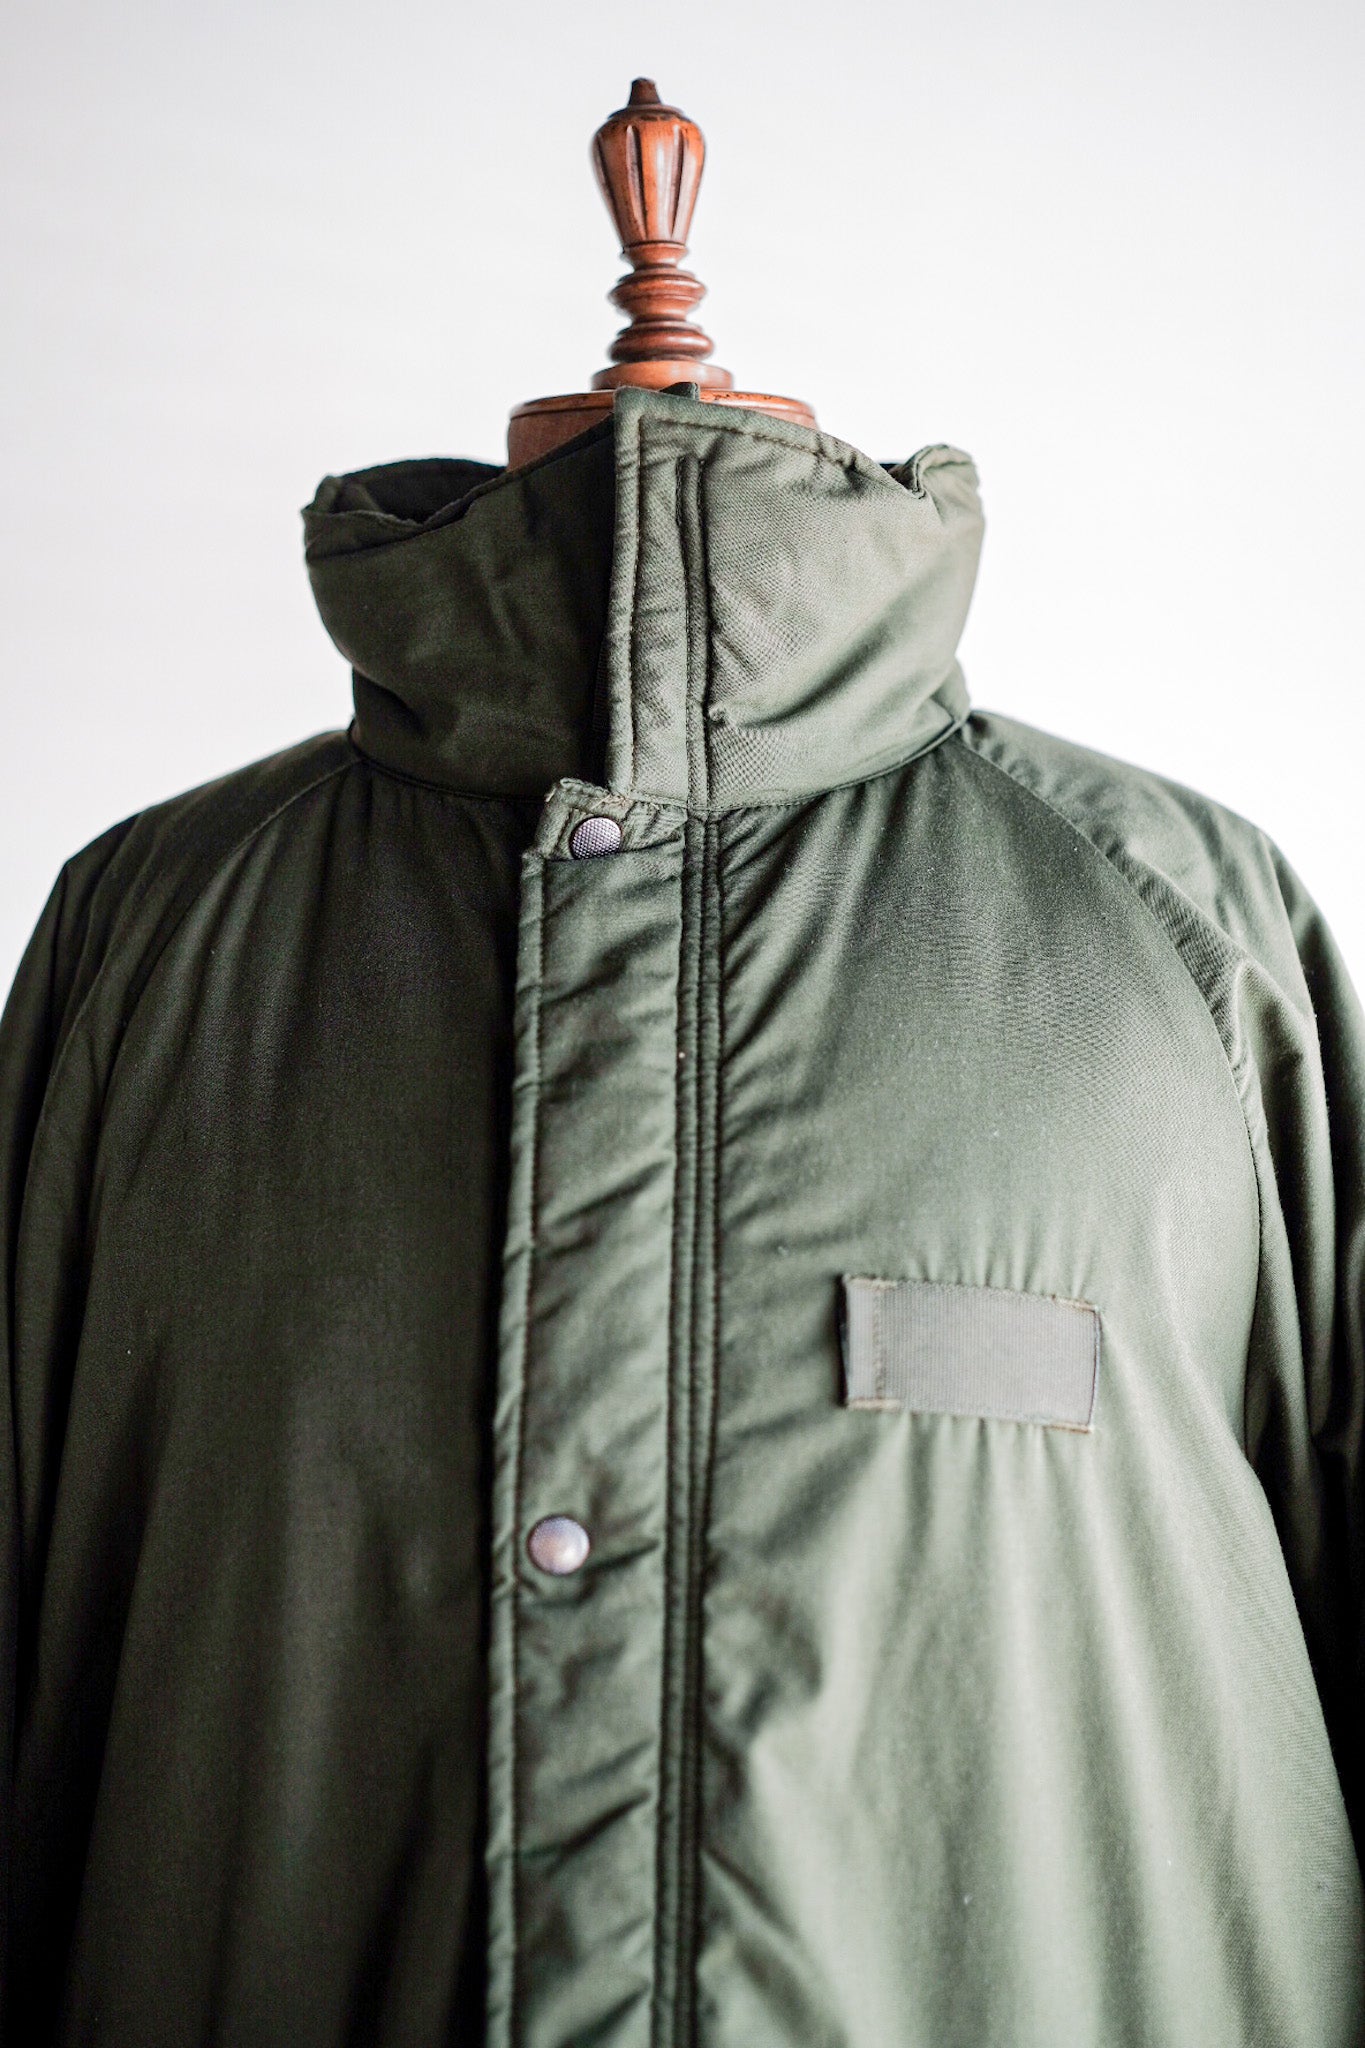 [〜90年代]瑞典軍隊M-90寒冷天氣大衣。190-75